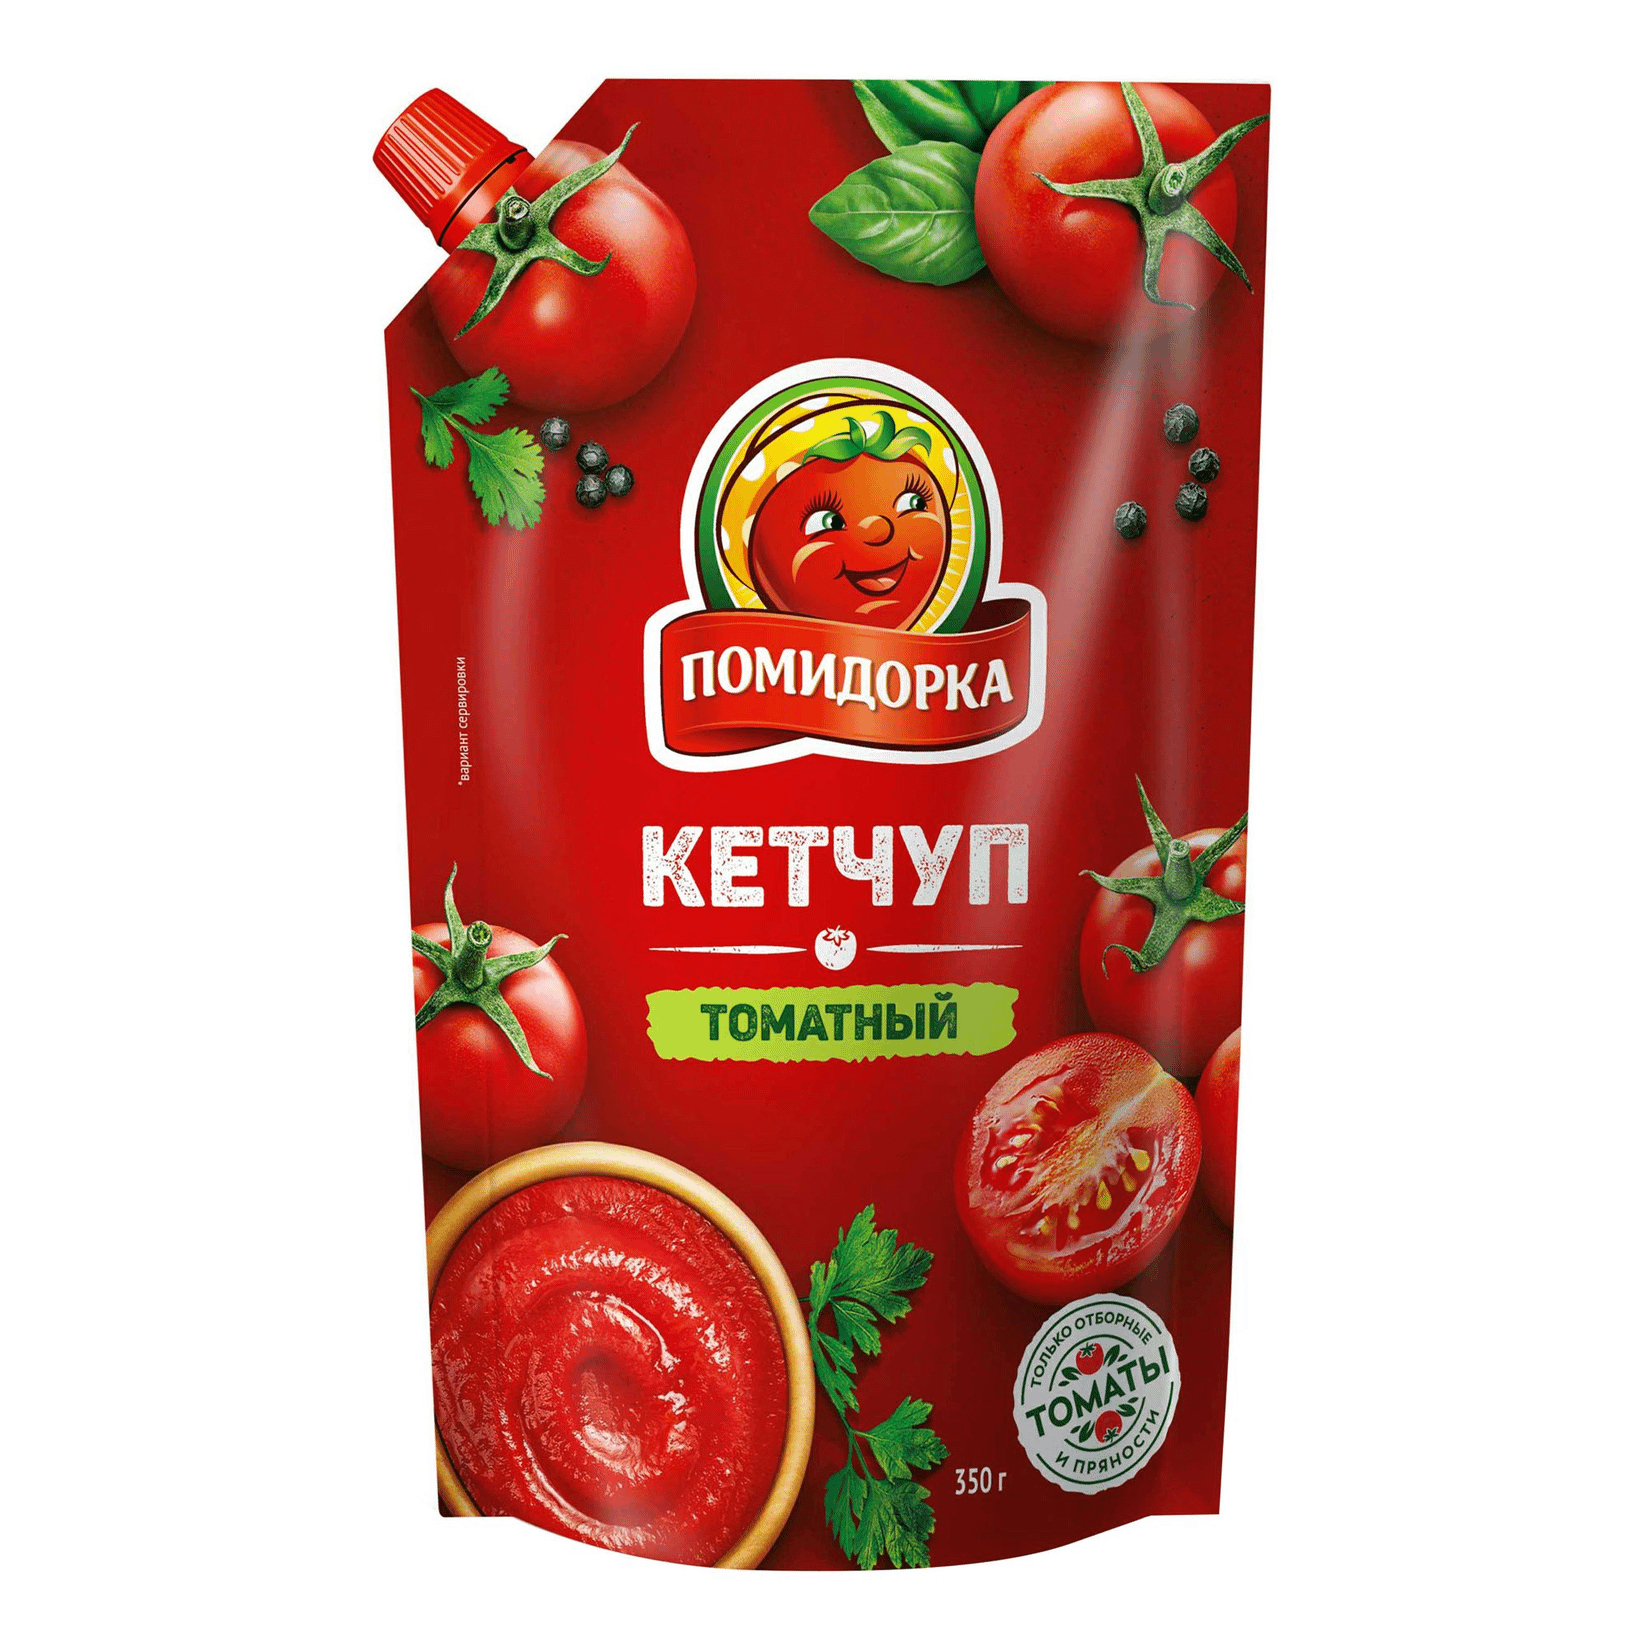 Кетчуп Помидорка Томатный 350 г кетчуп томатный calve 350 г